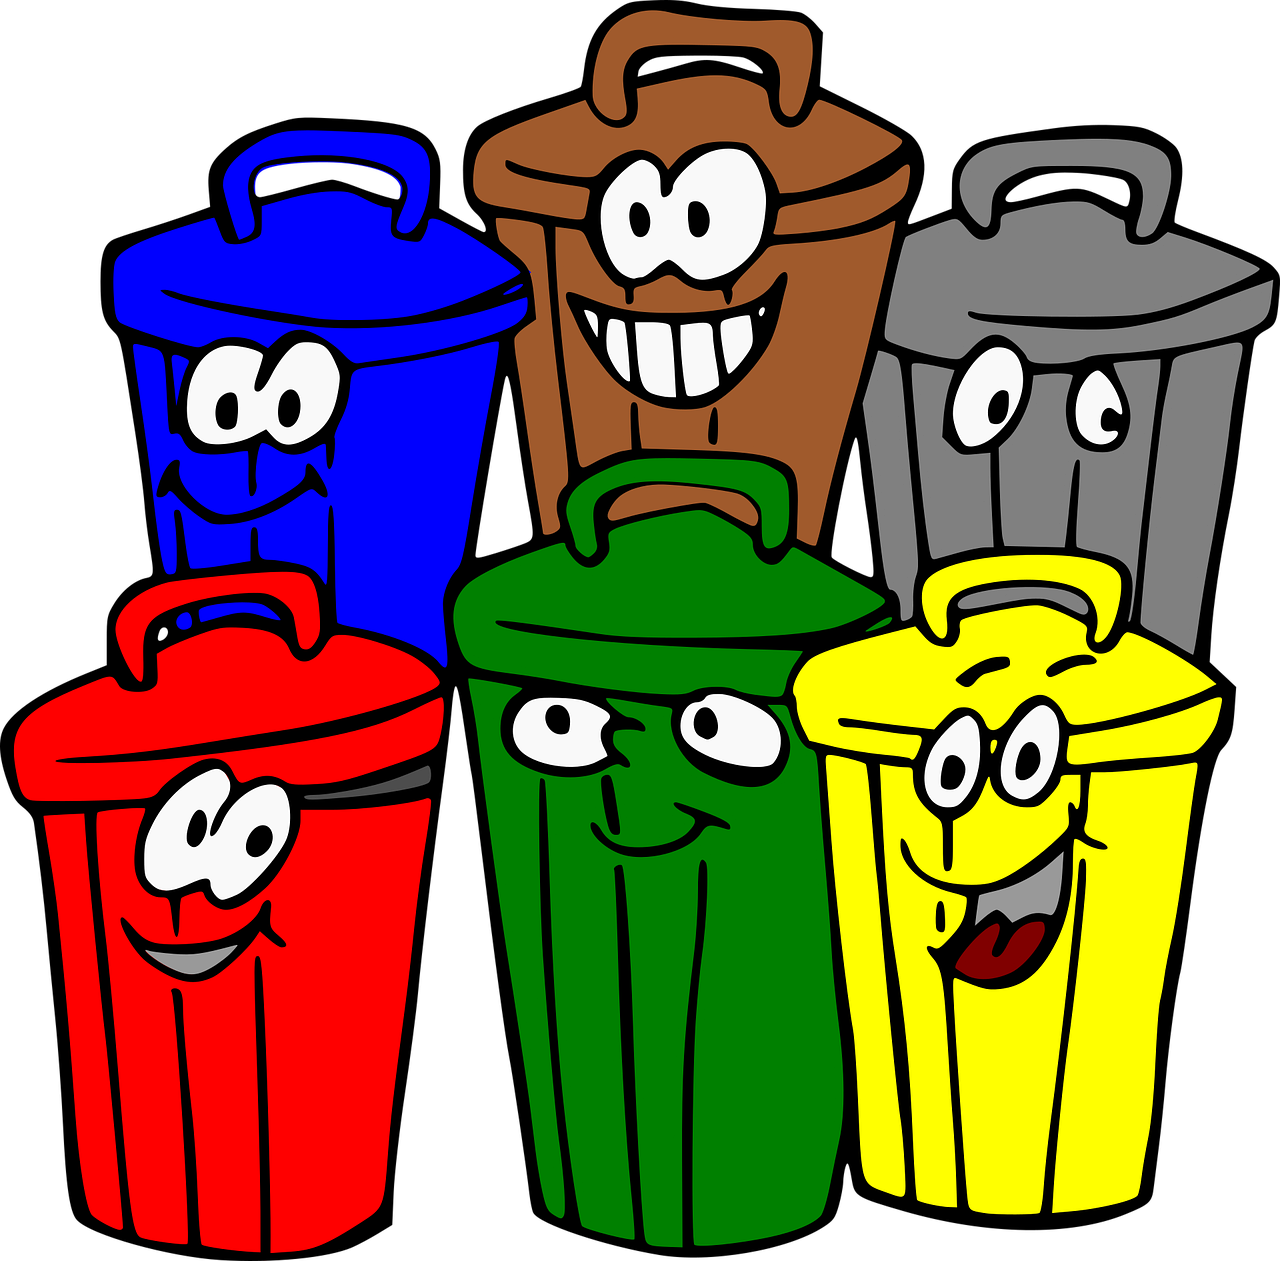 Trash Bins Smiley Face Trash Cans  - ArtRose / Pixabay